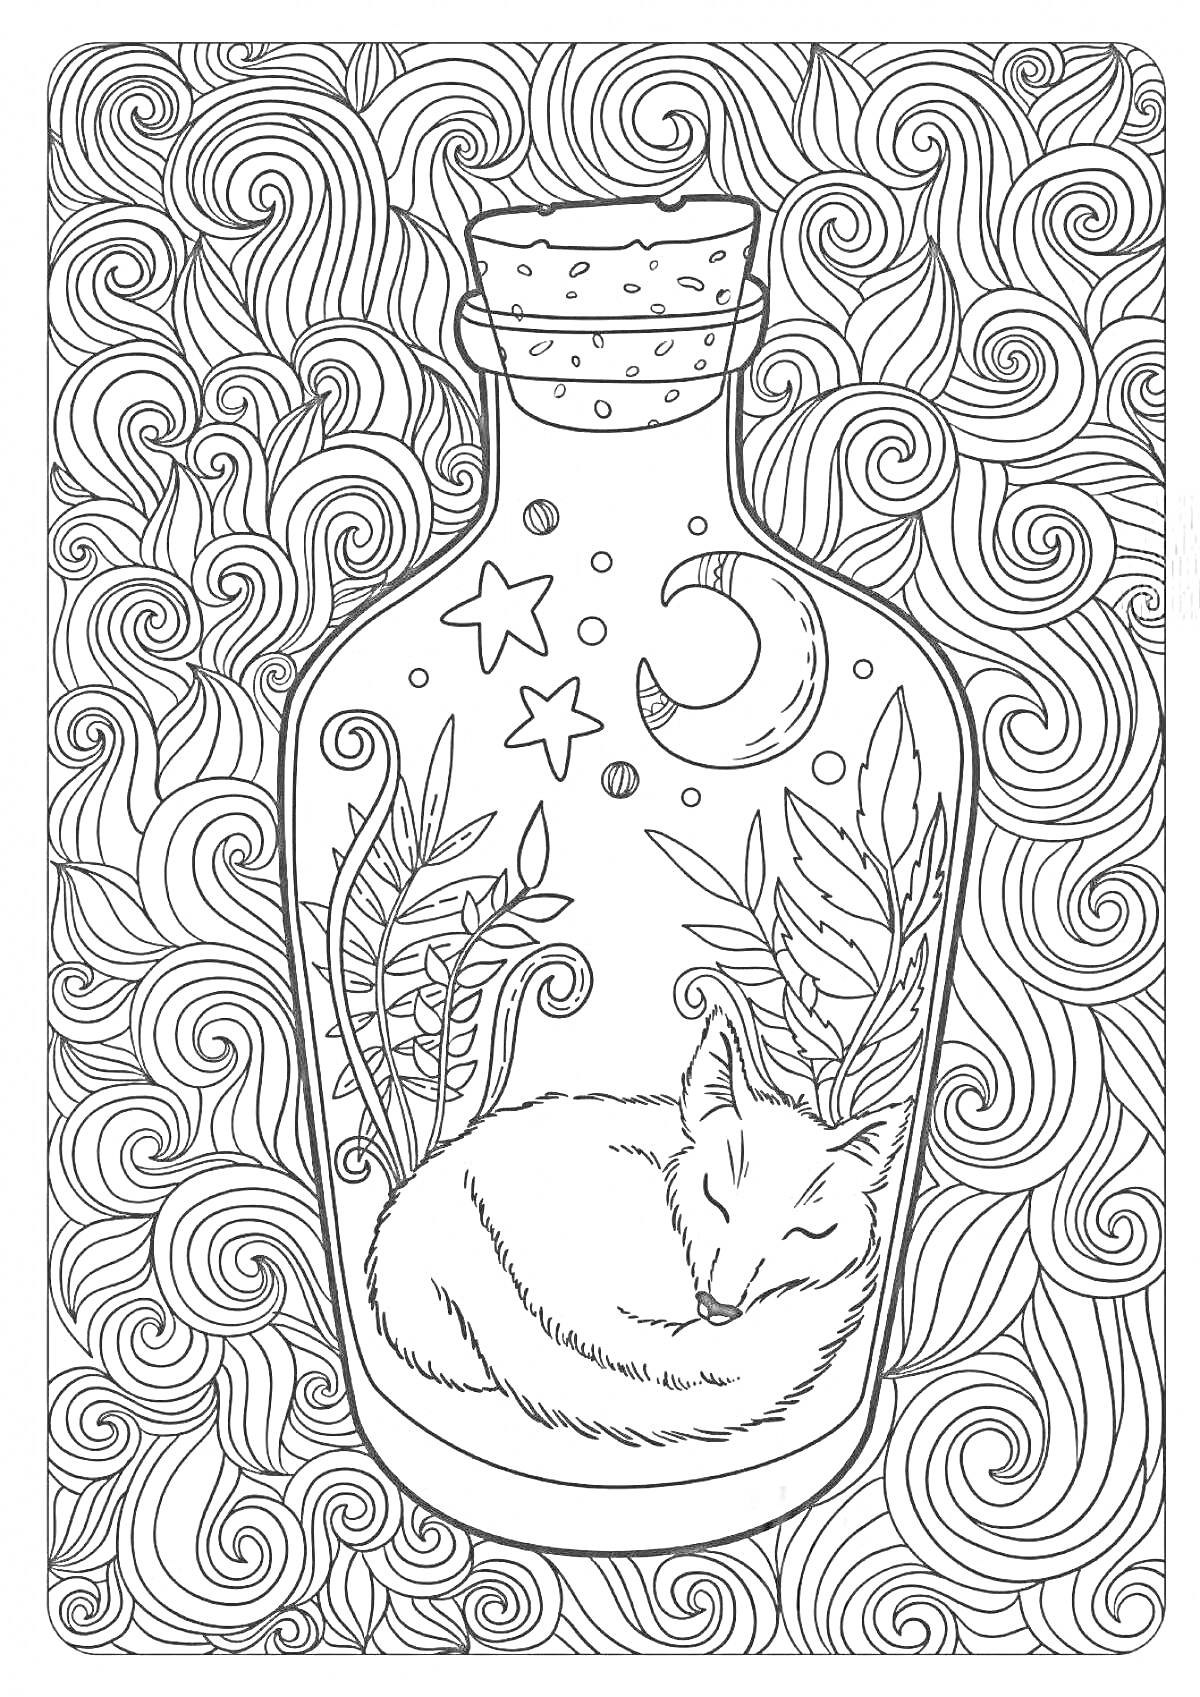 Раскраска Спящий лис в бутылке с листьями, звездами и луной на фоне волнистого узора